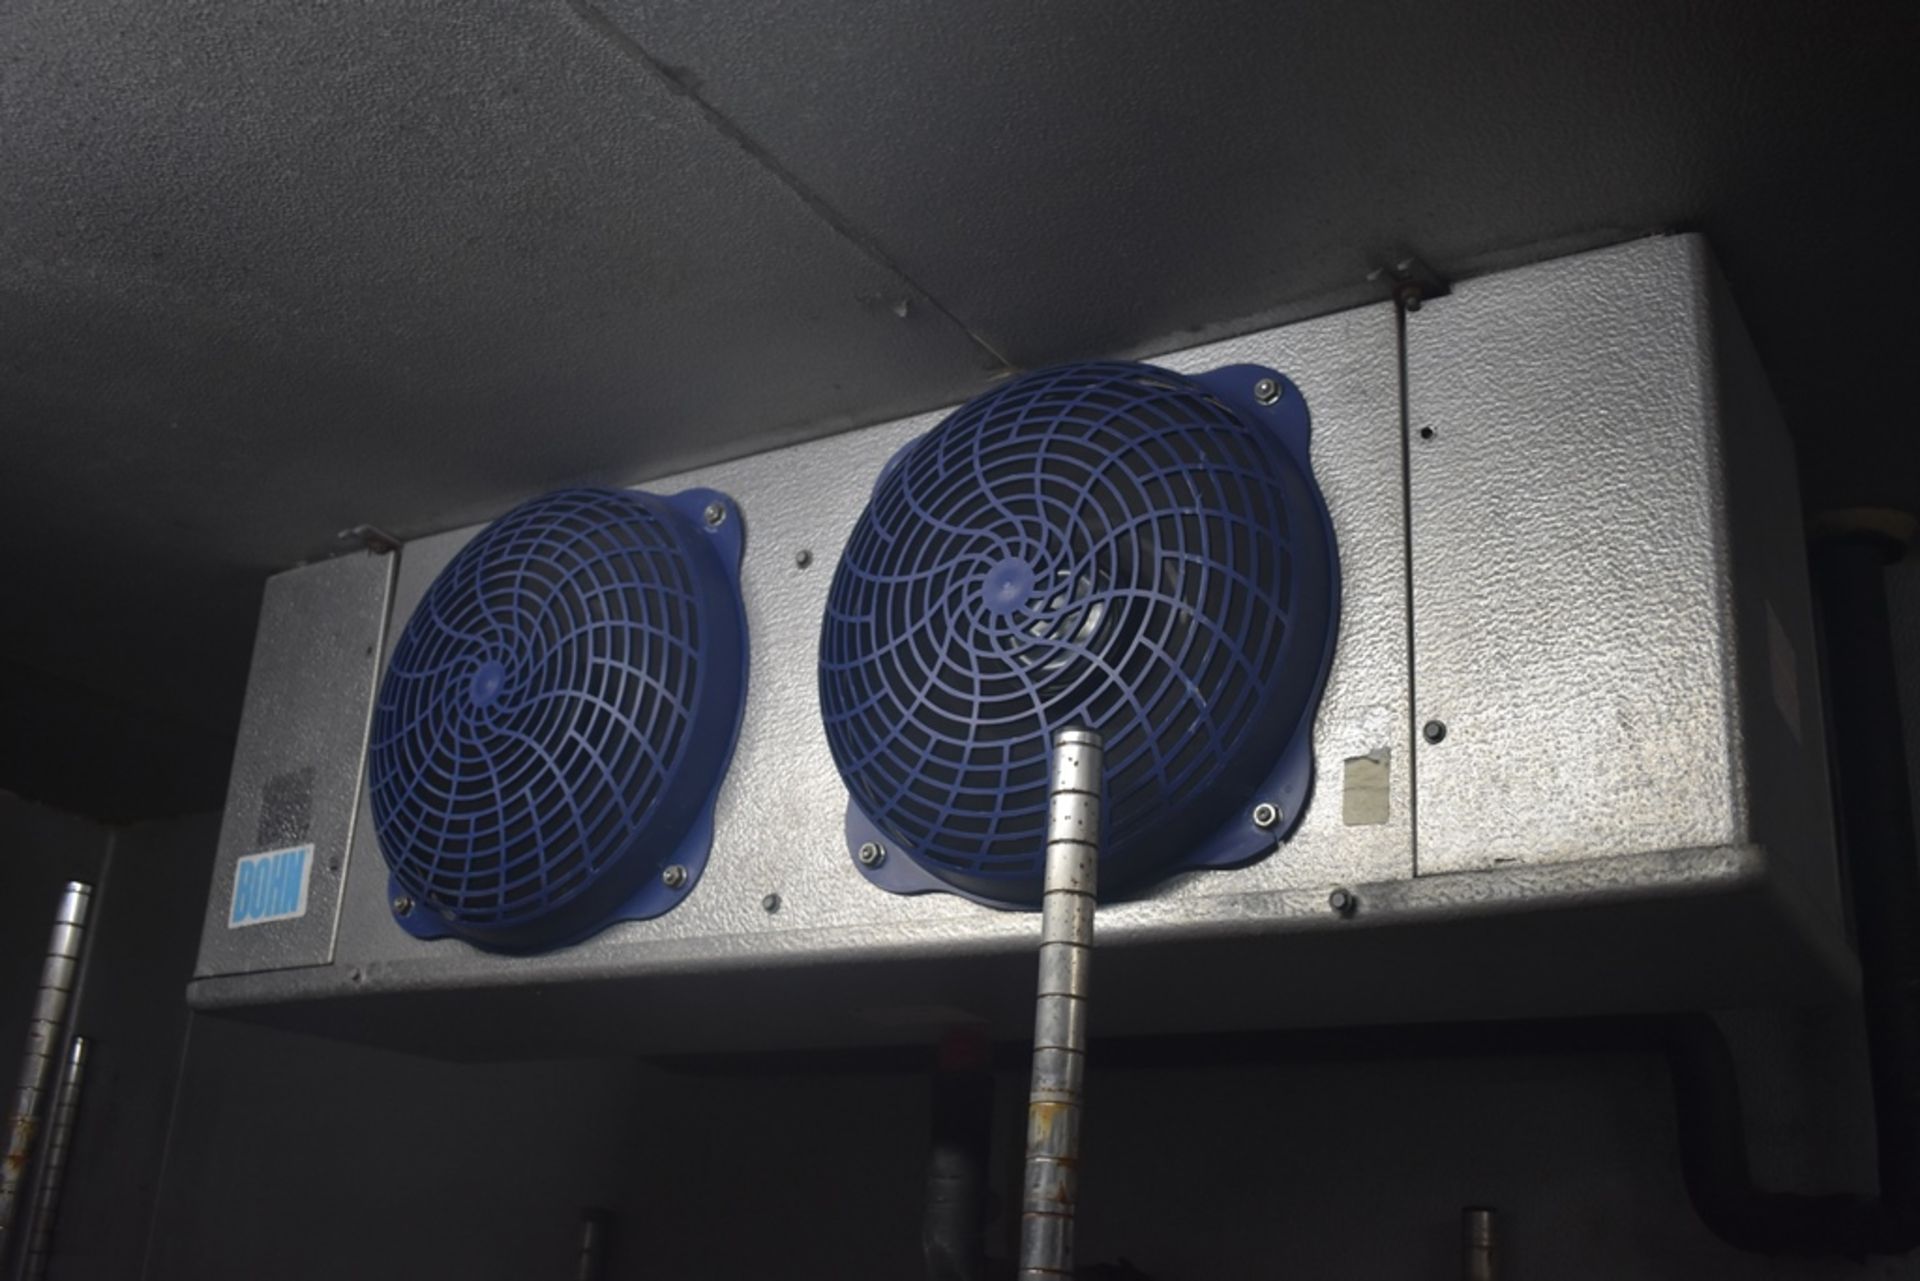 Cámara de congelación medidas 2.50 x 2.54 x 2.20 m, incluye difusor de dos ventiladores marca Bohn, - Image 12 of 31